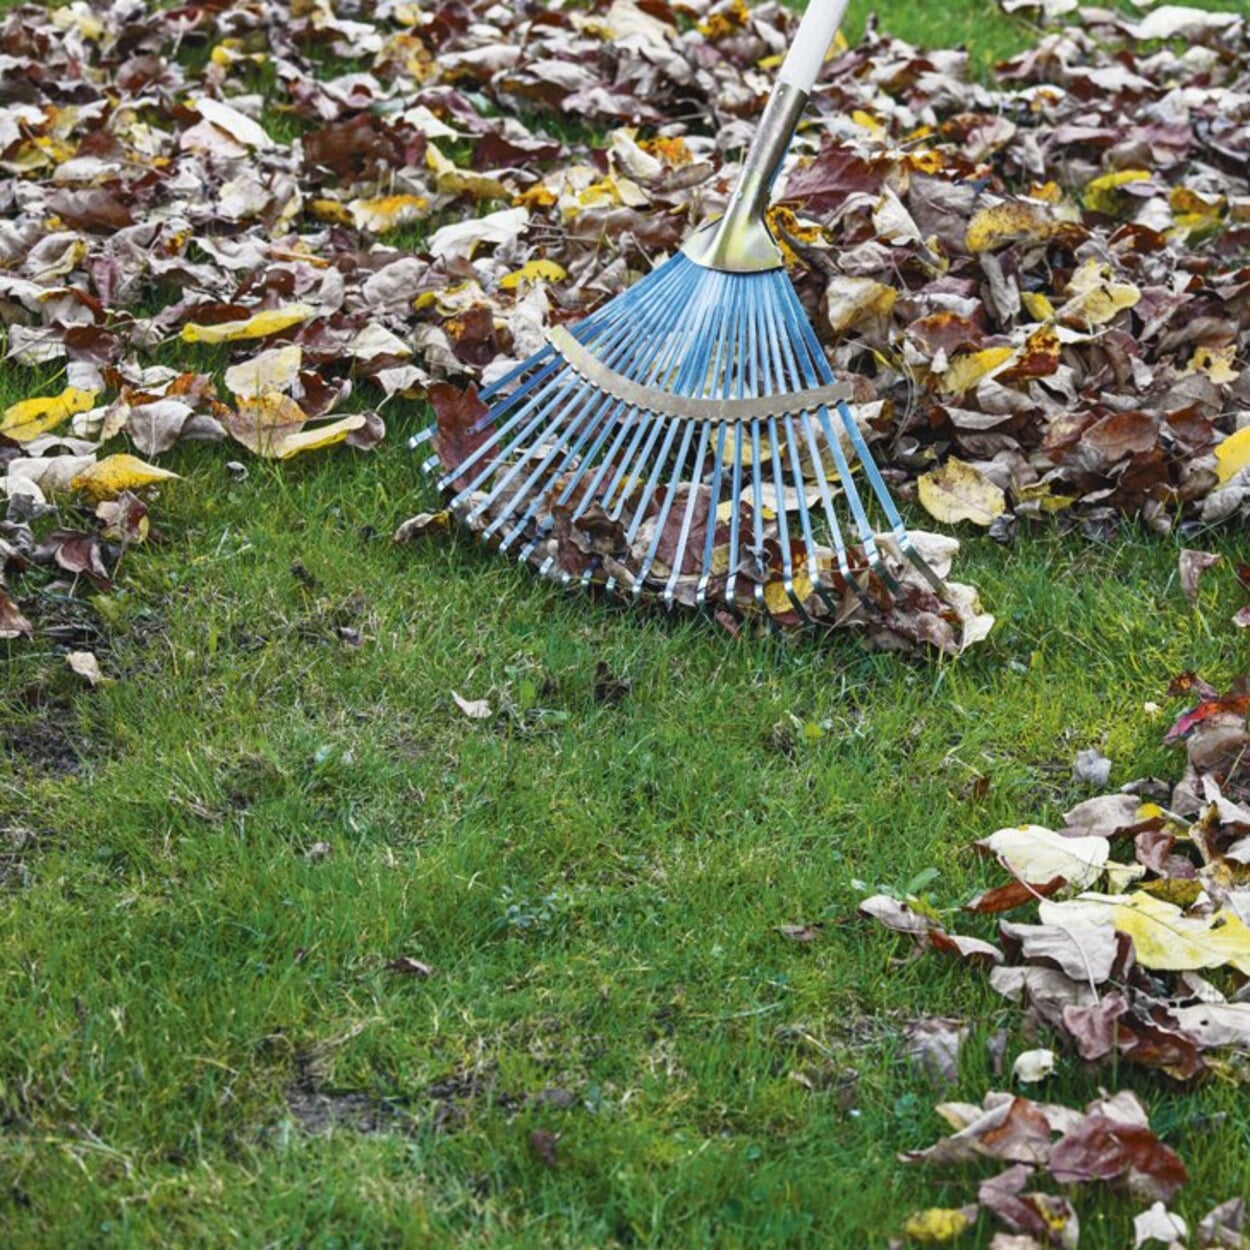 Verwijder grote hoeveelheden bladeren uit het gebied voordat u gaat maaien.